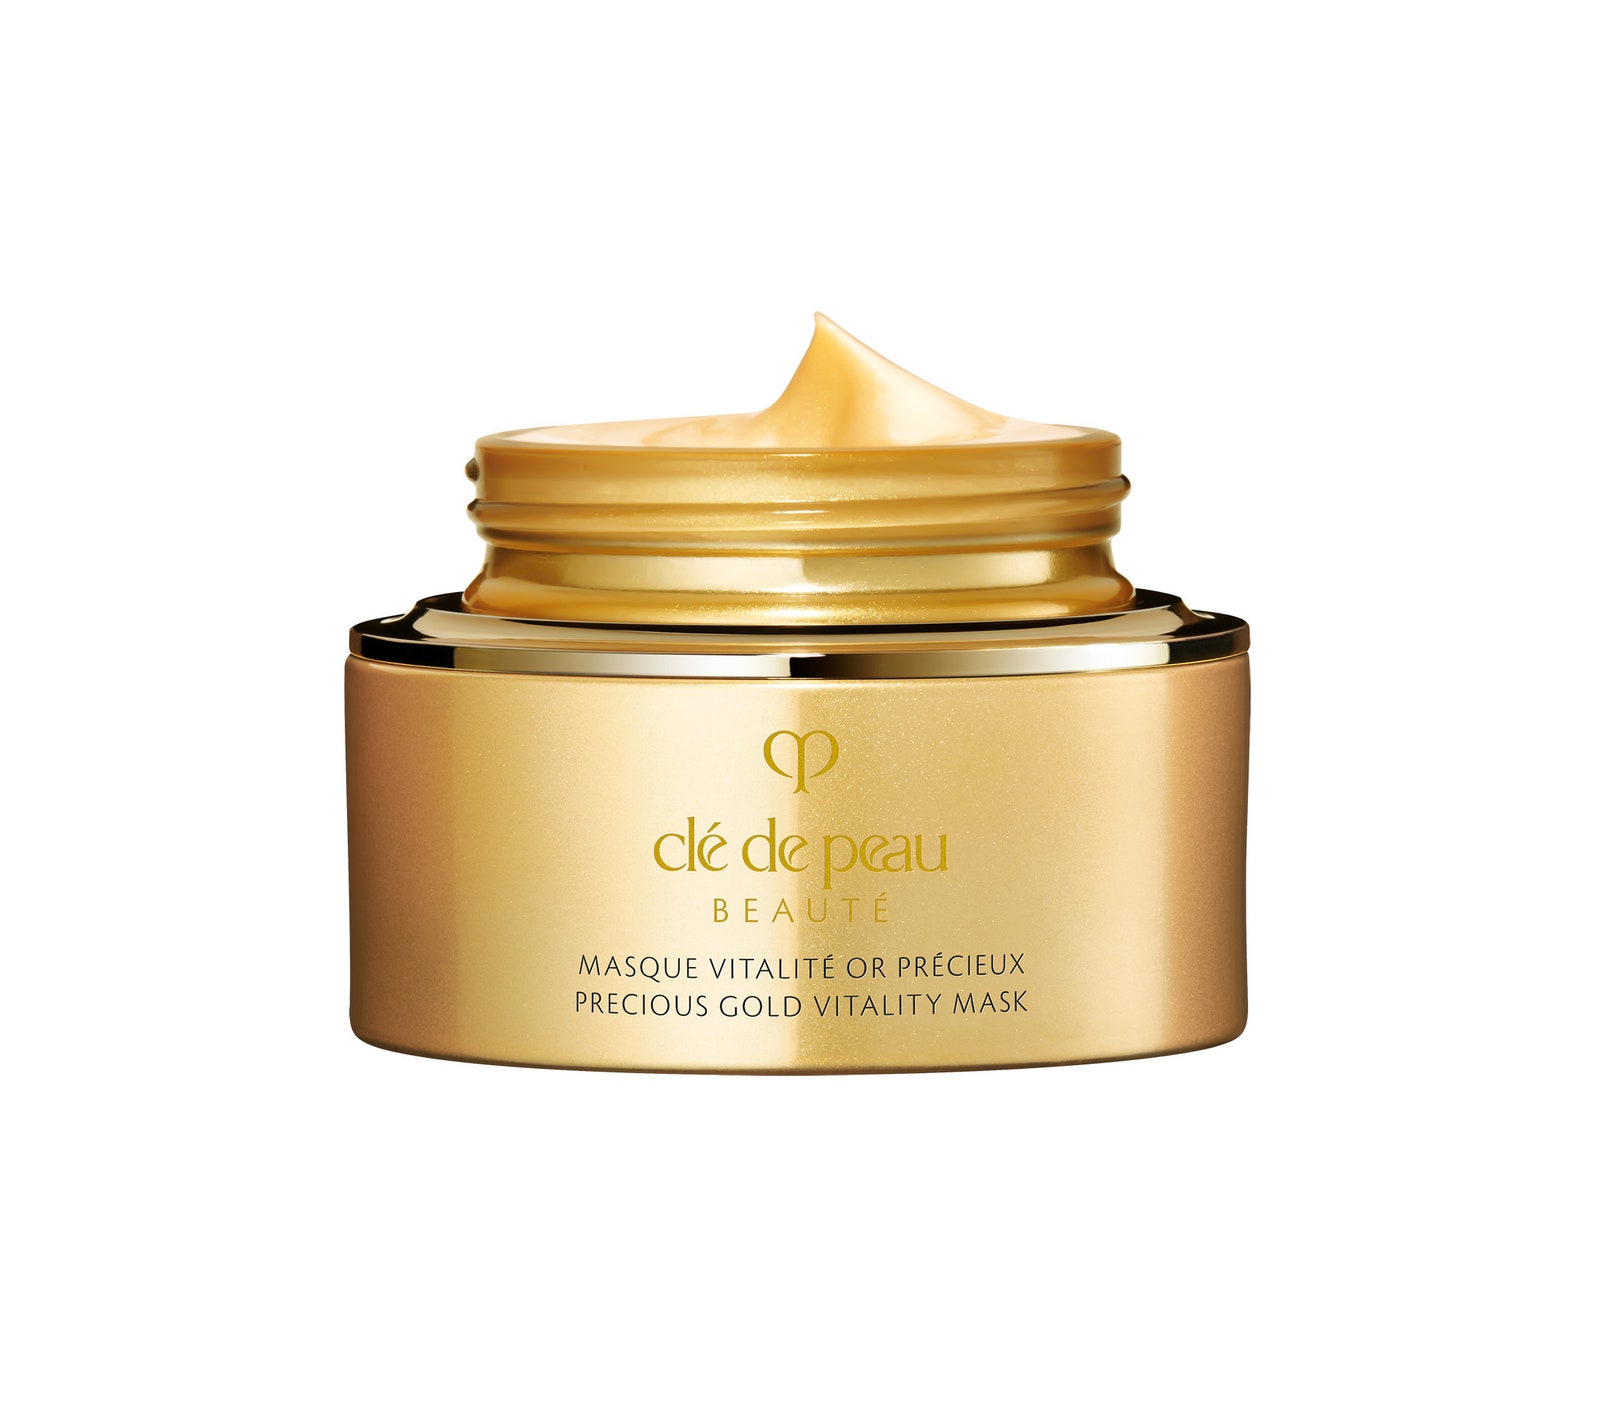 Cl de Peau Beaut Precious Gold Vitality Mask